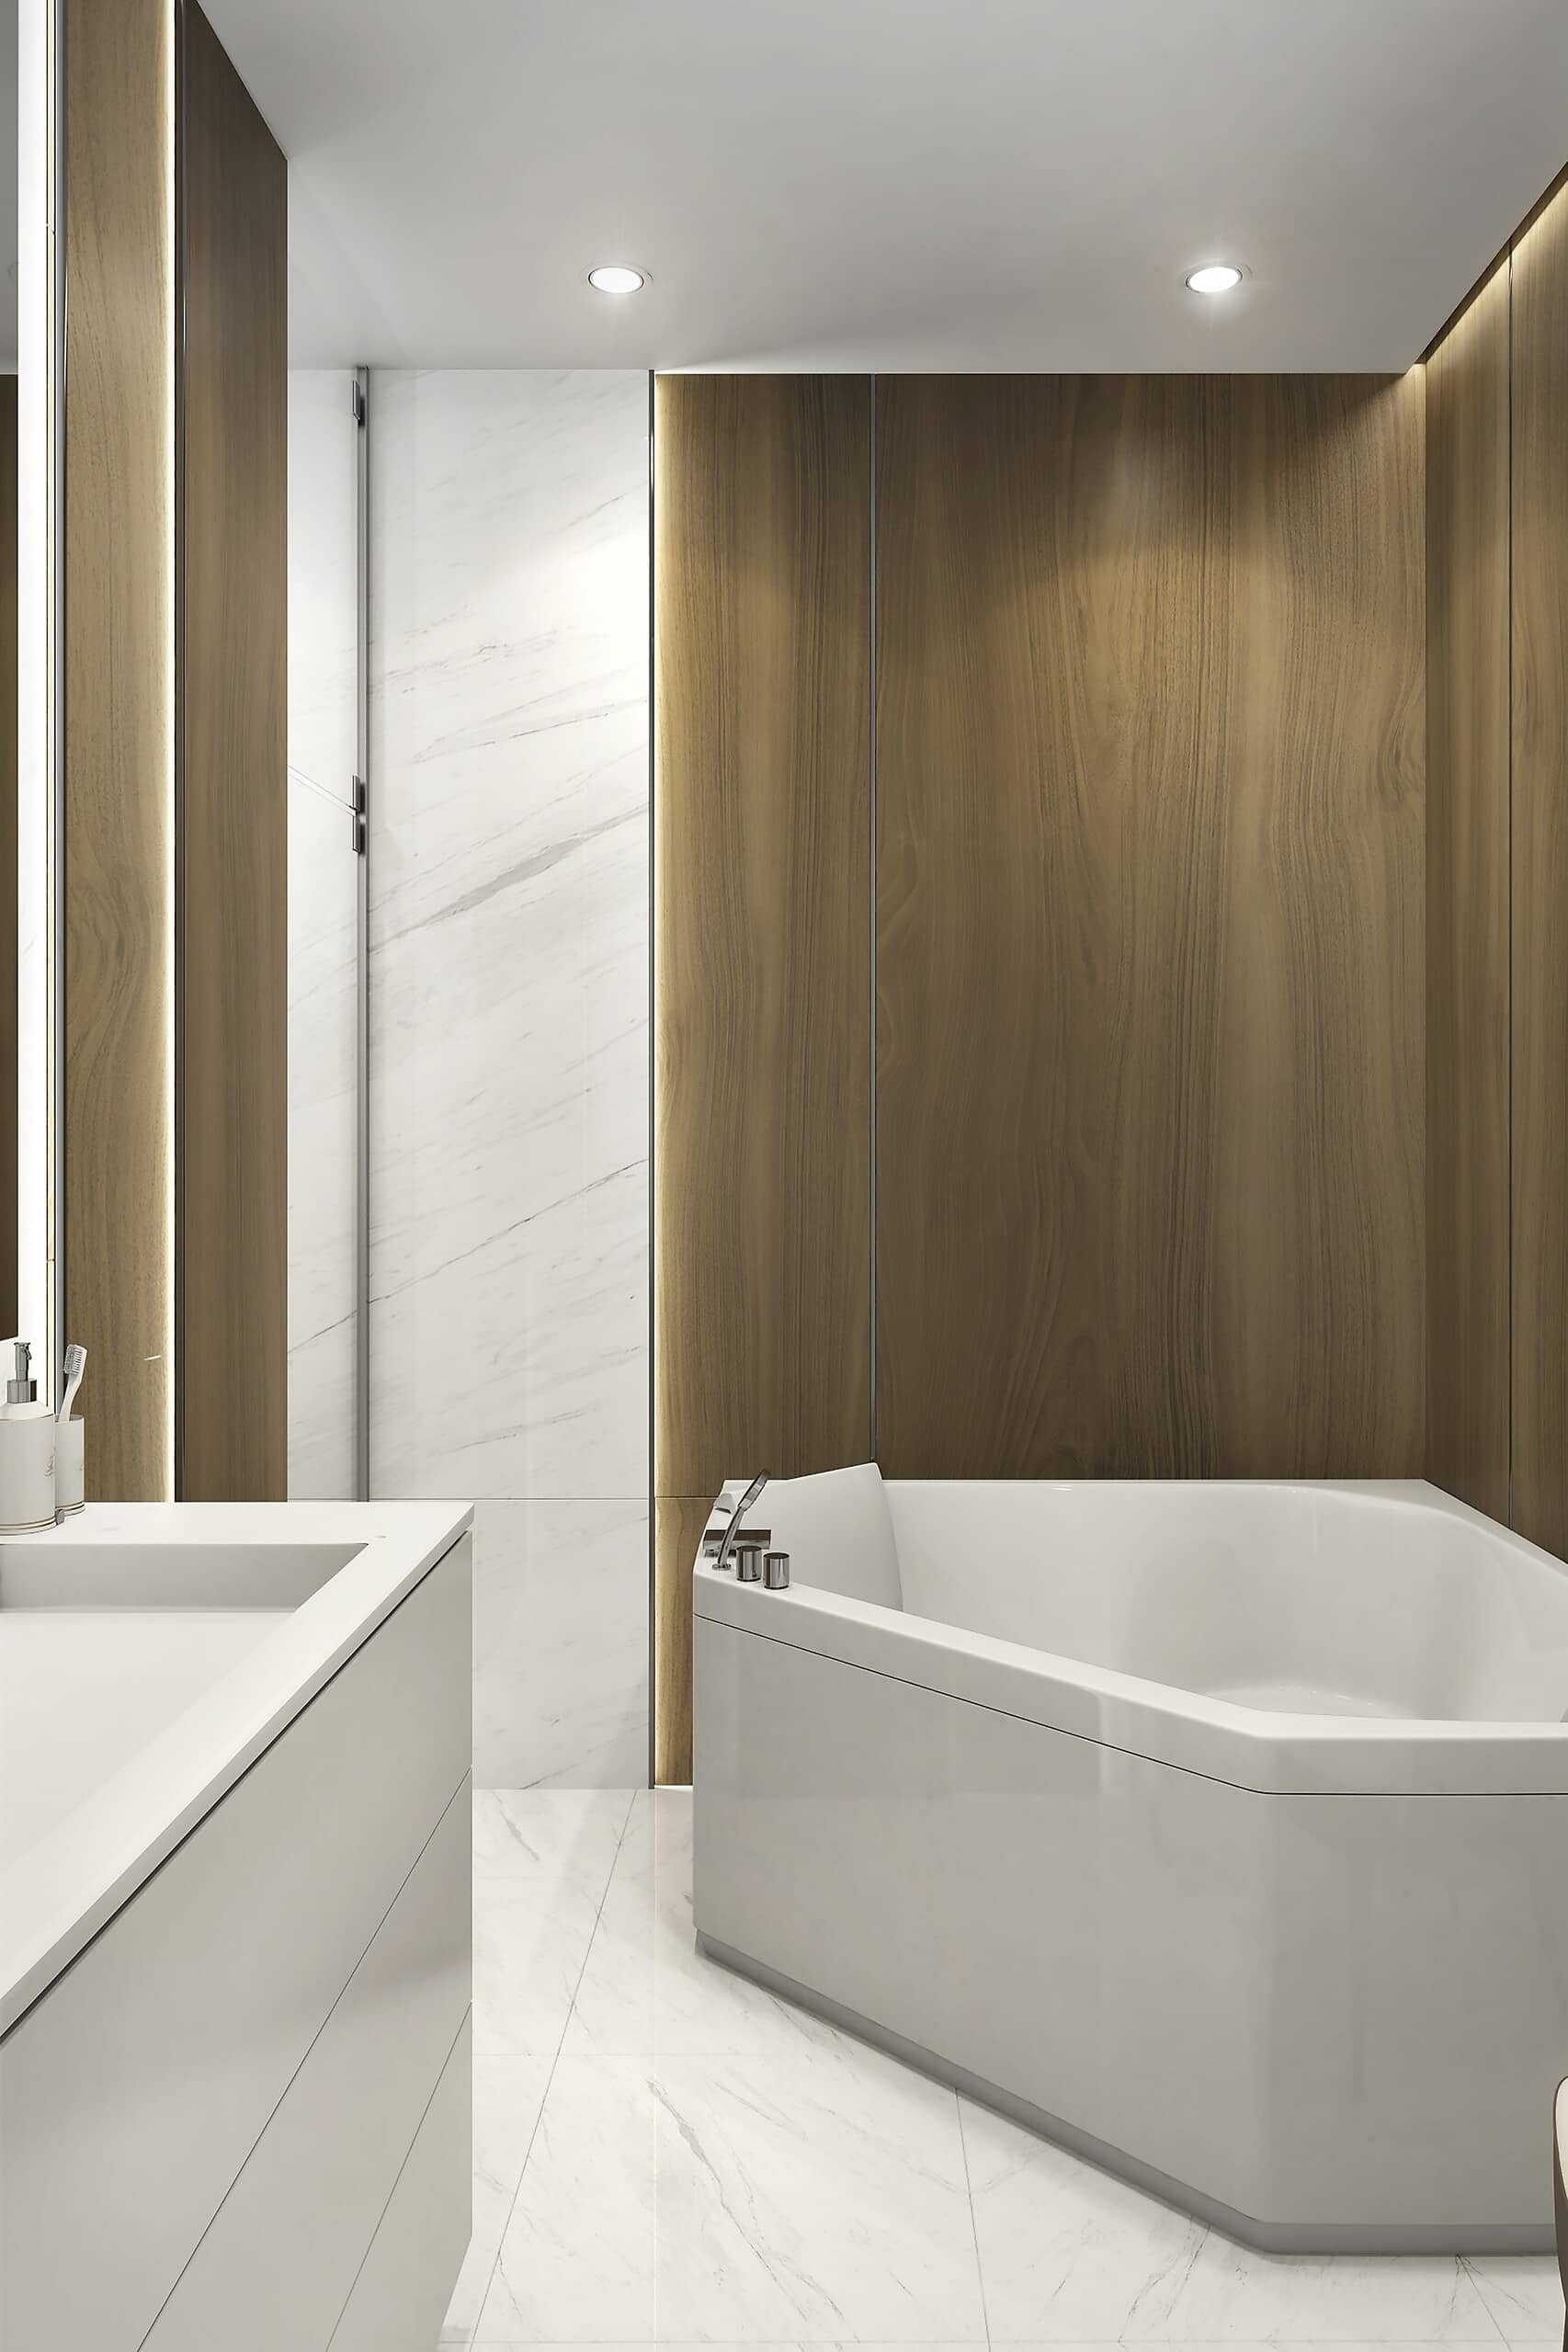 Интерьер в ванной комнате светлого цвета с деревянными панелями